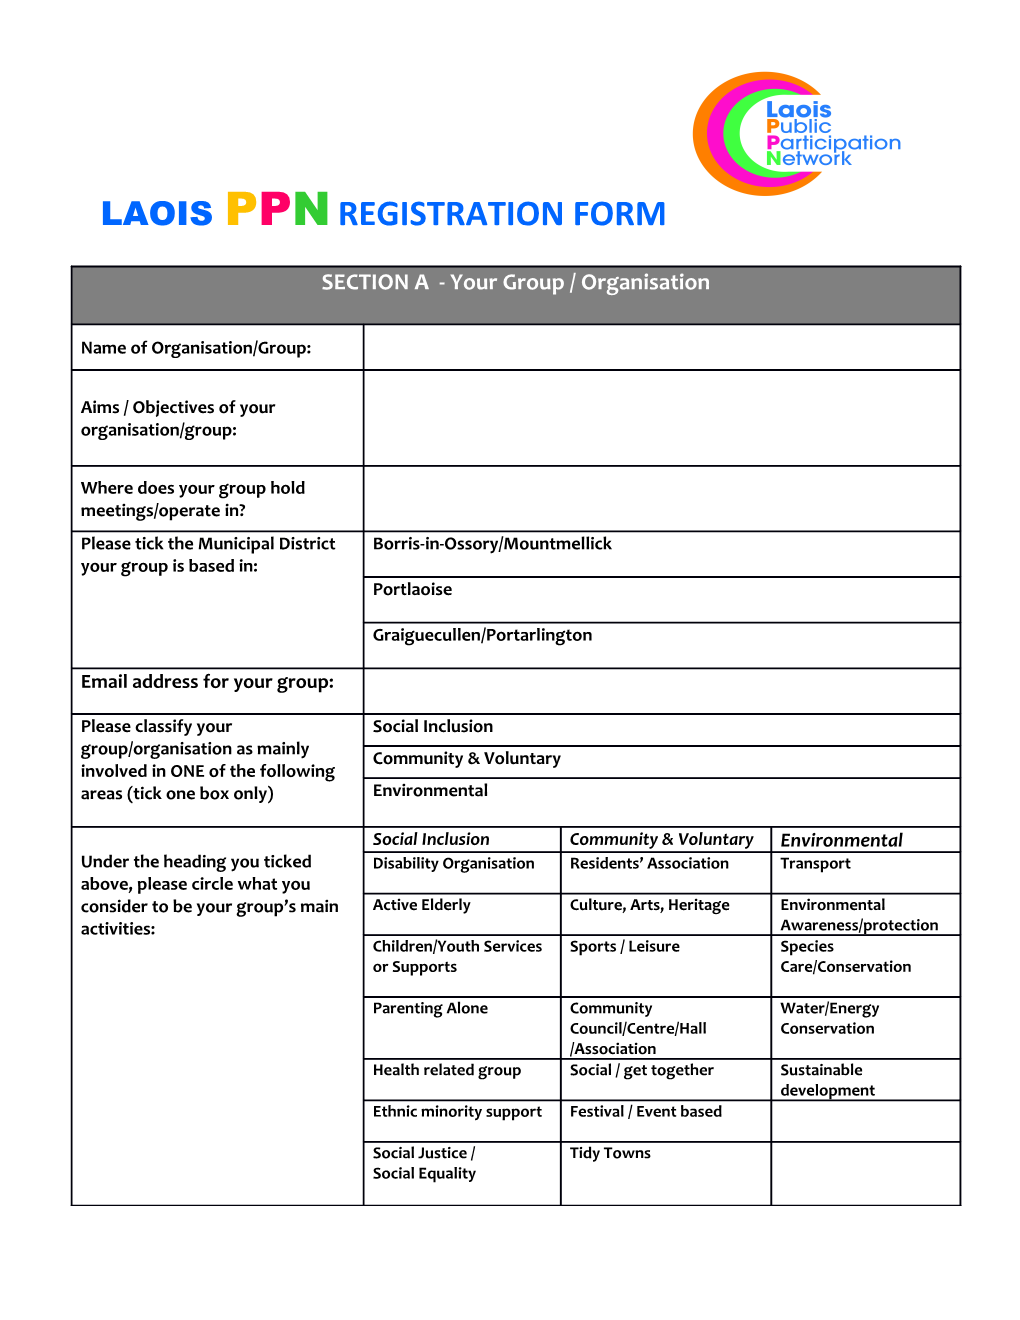 Laois Public Participation Network